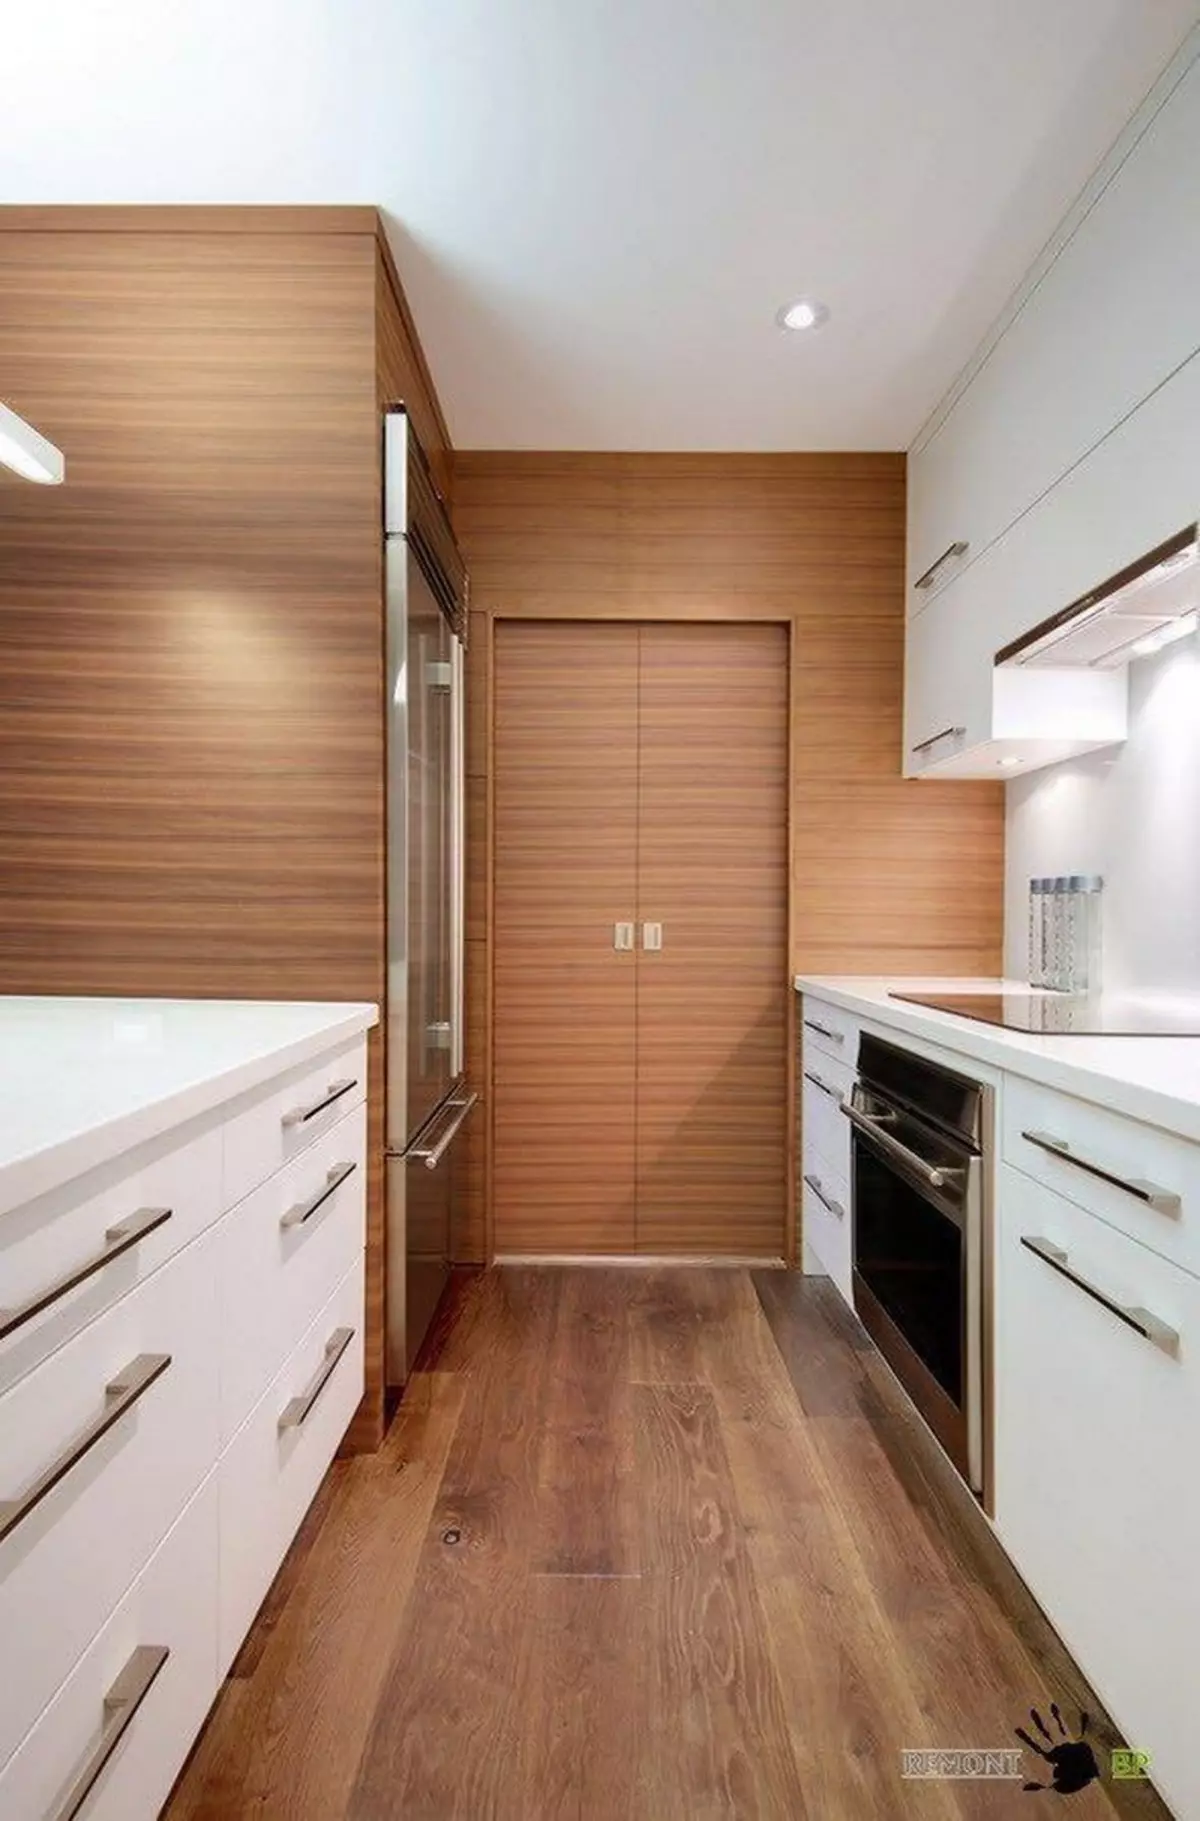 Virtuvės įėjimo salė (62 nuotraukos): virtuvės išdėstymas kartu su koridoriumi privačiame name ir bute. Interjero dizaino virtuvės salės viename stiliuje 9487_50